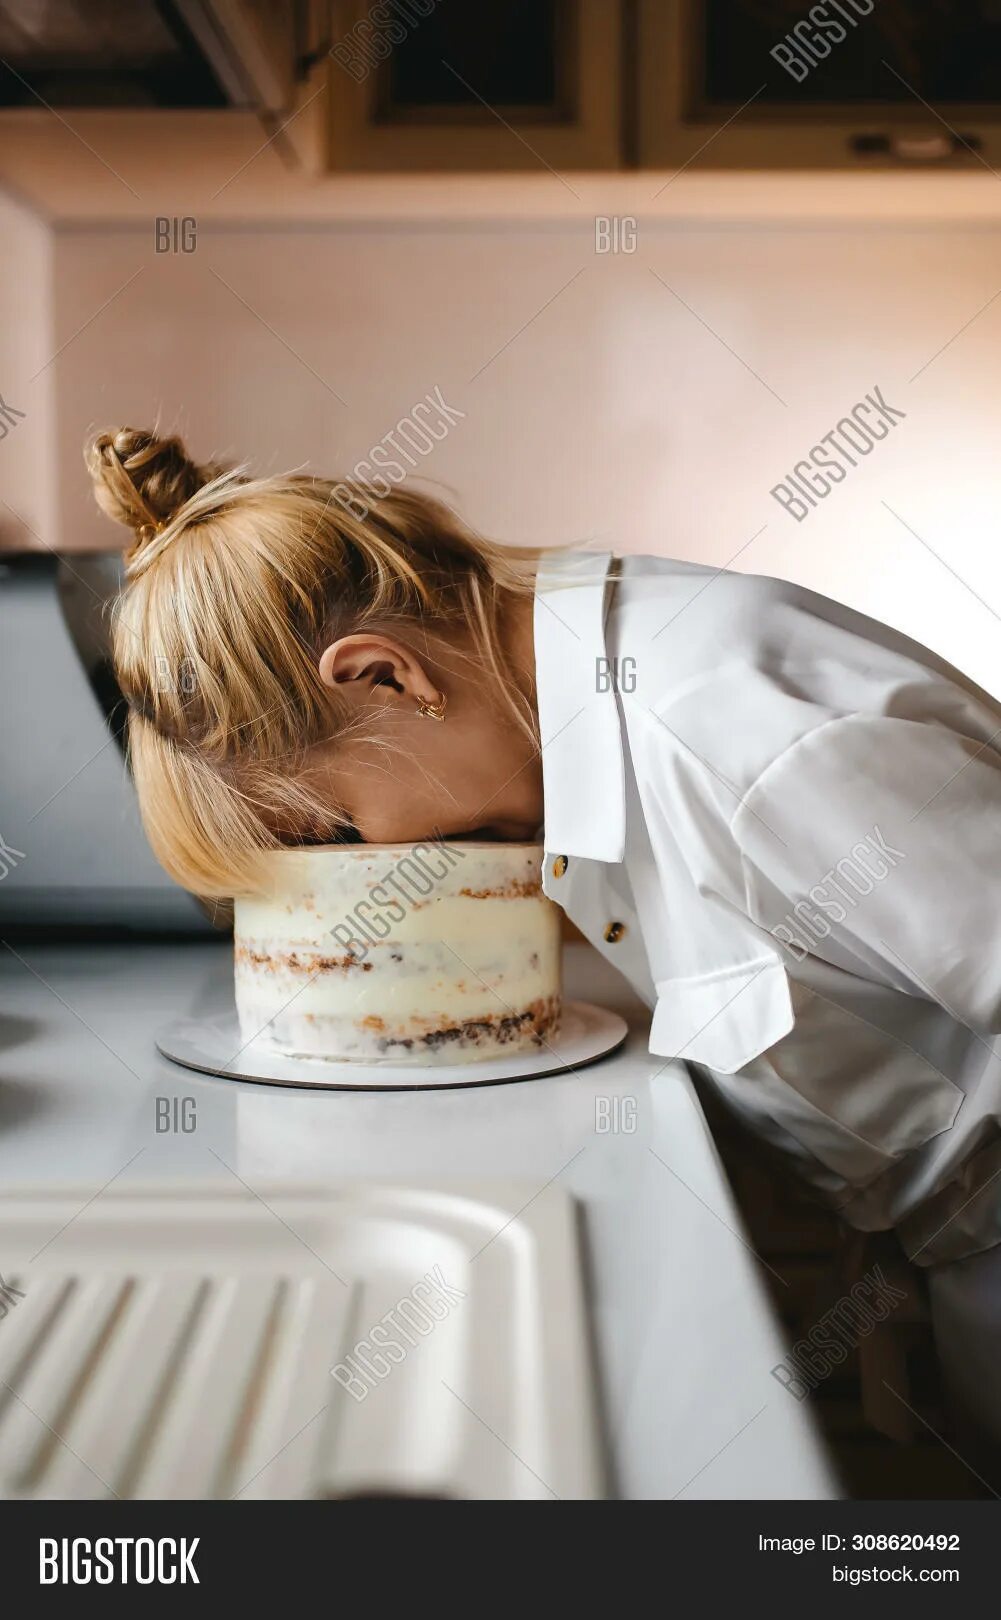 Девушка лицом в торт штырь. Торт с лицом женщины. Фотосессия с тортом в лицо.